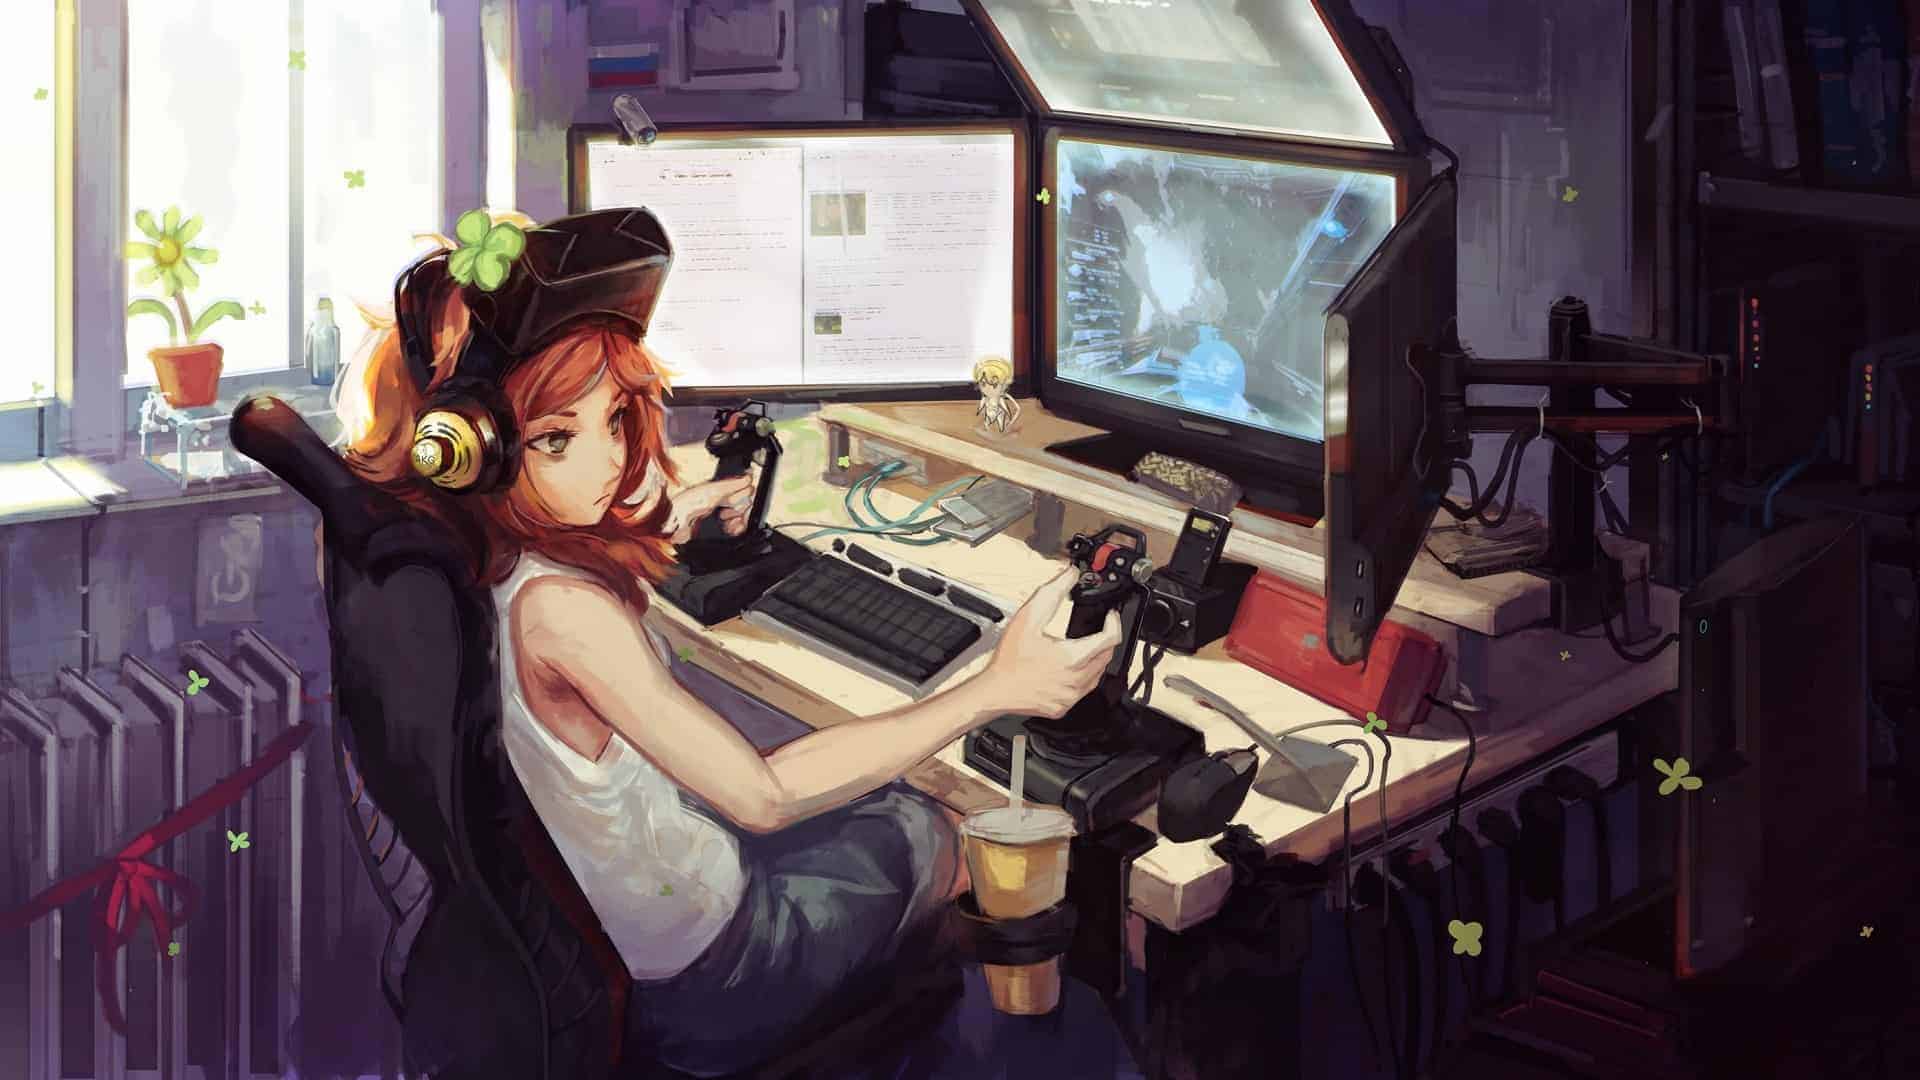 Anime Gamer Girl playing